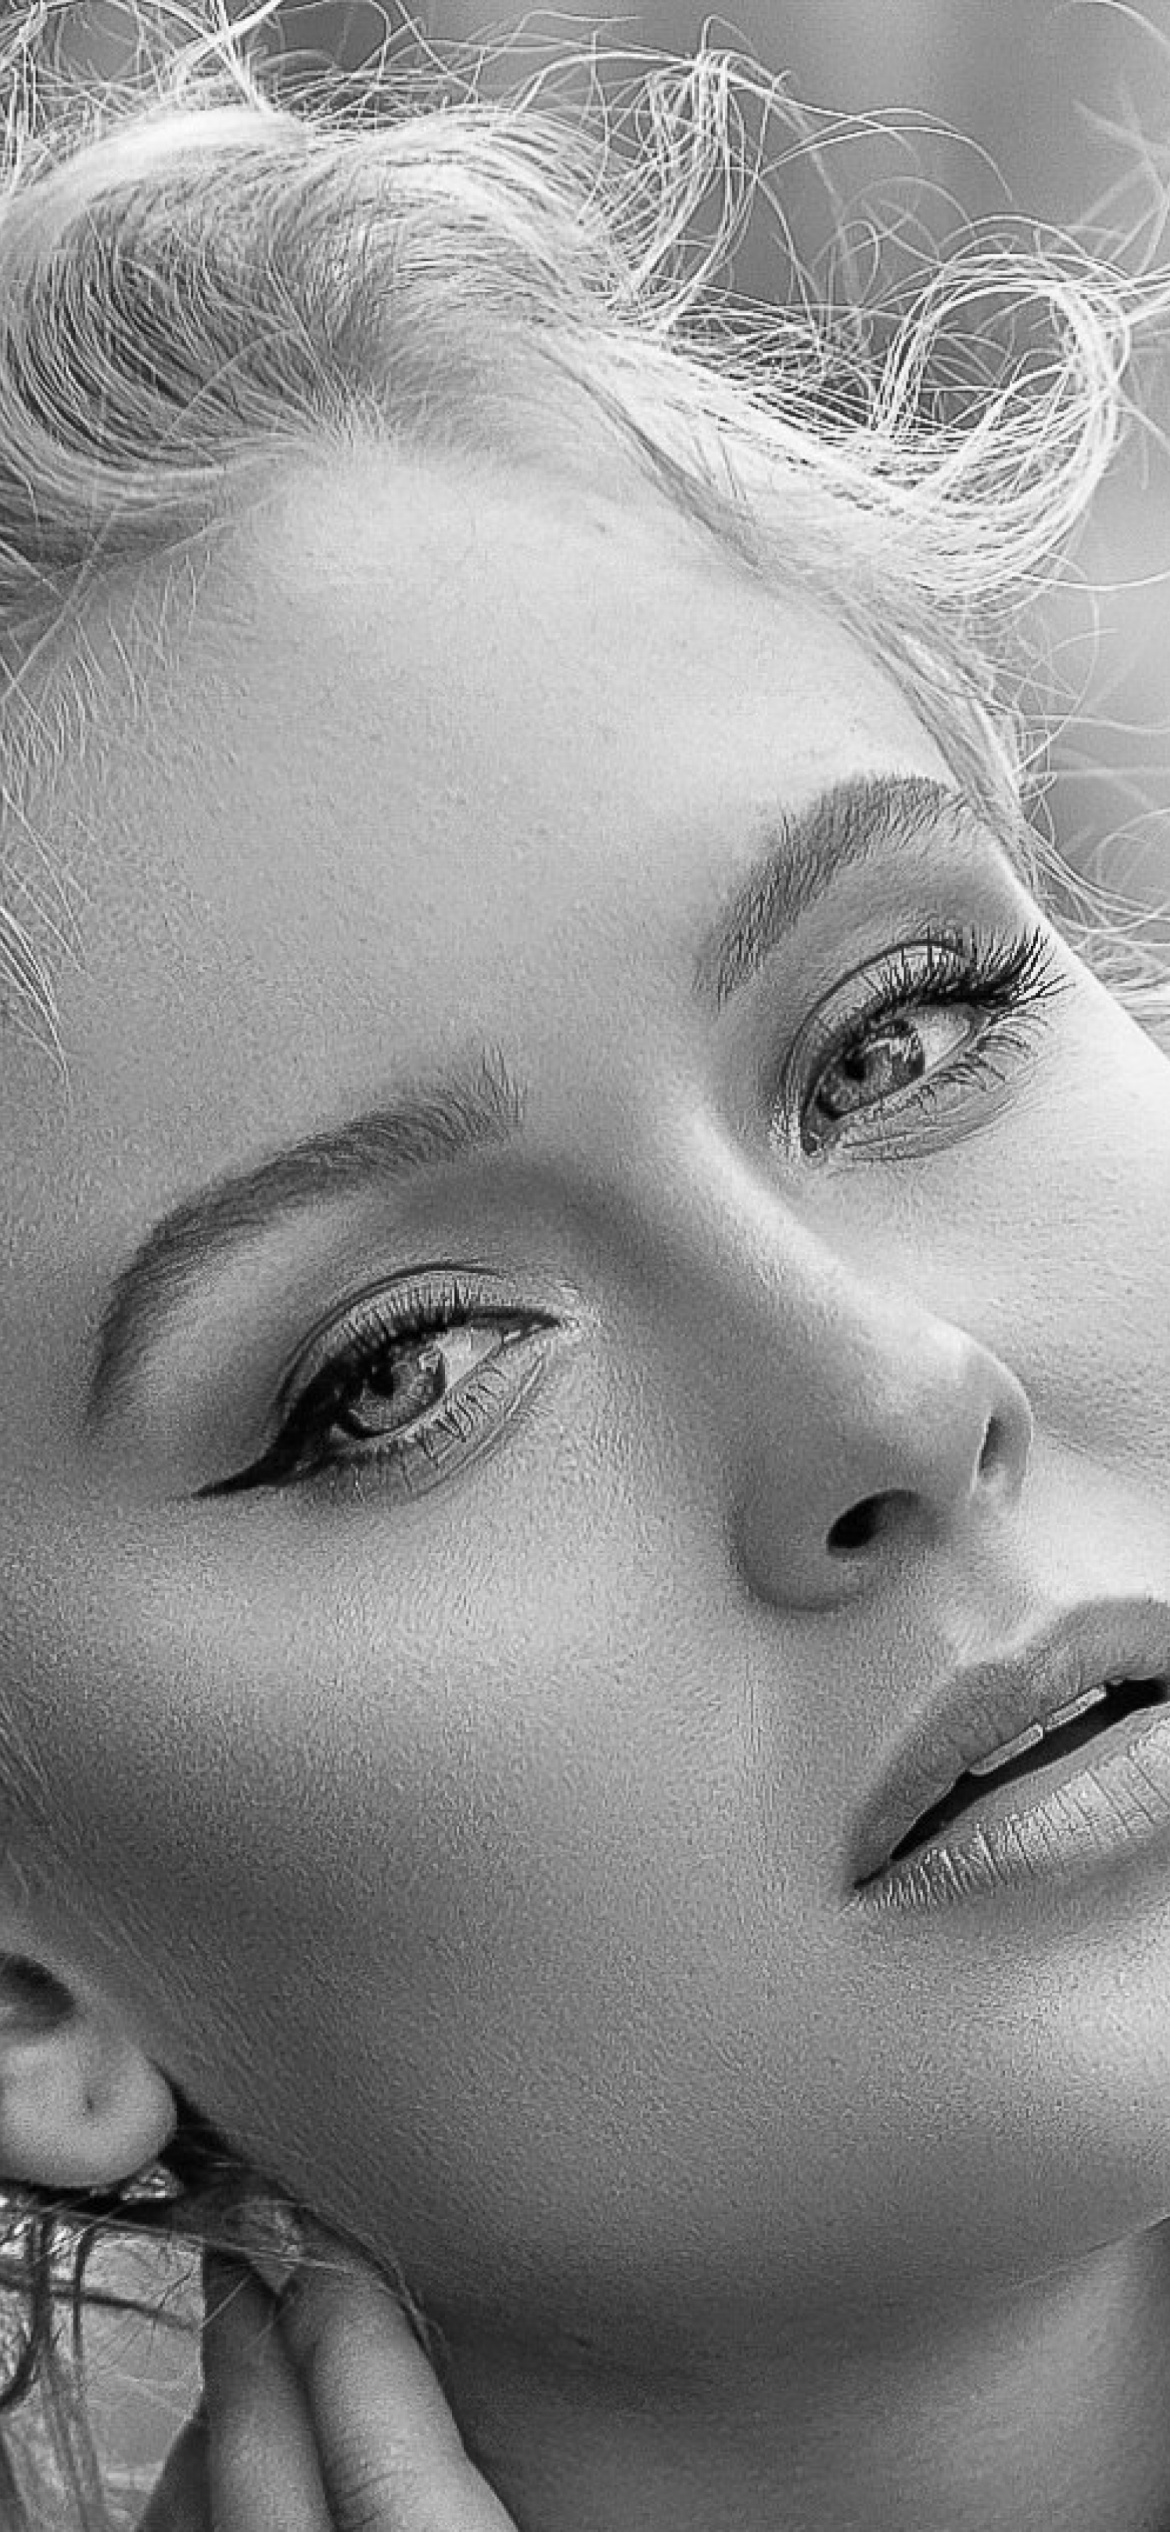 Zara Larsson Swedish singer screenshot #1 1170x2532